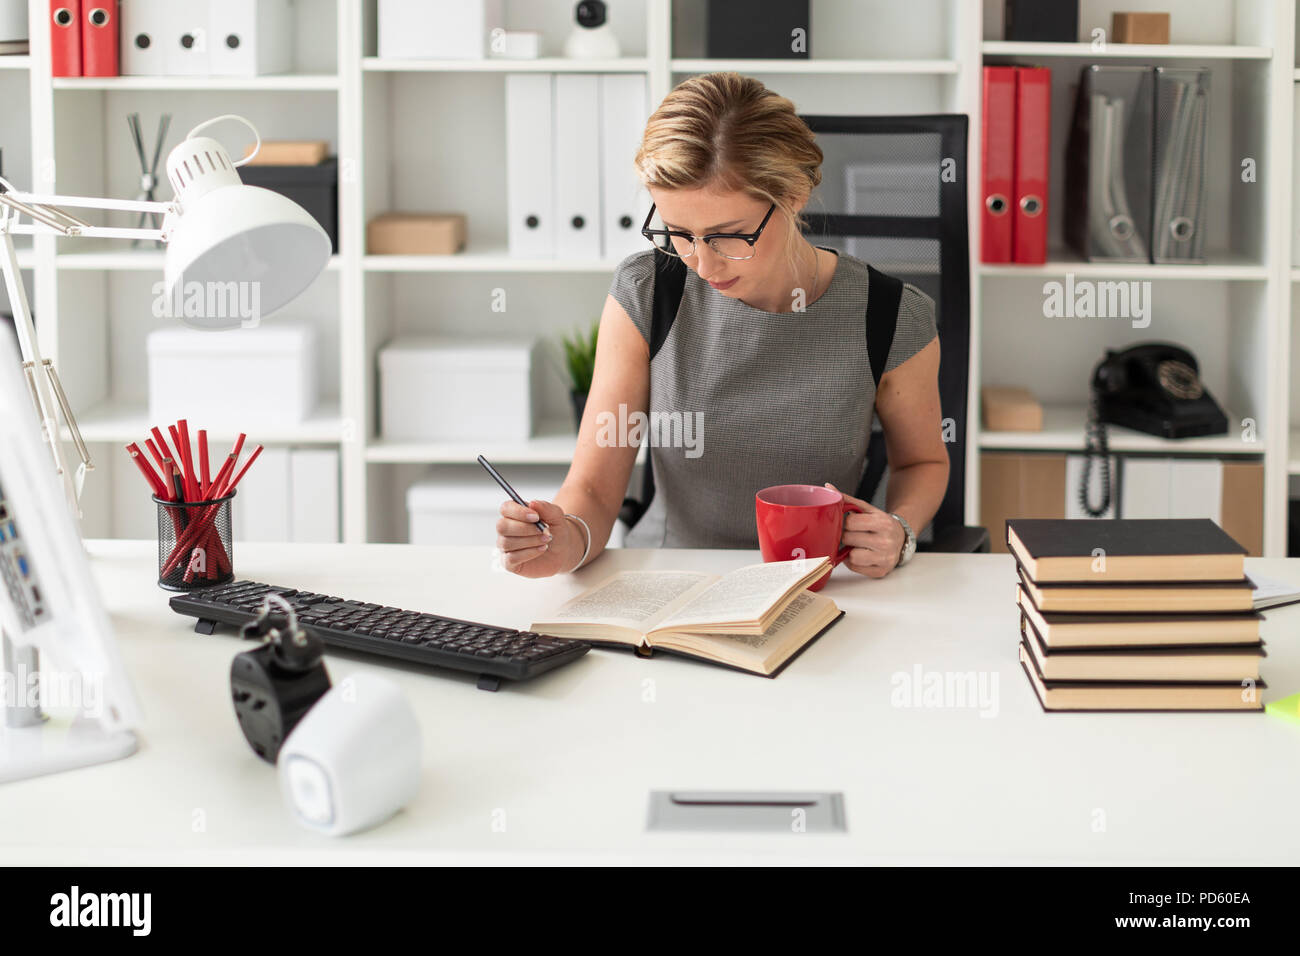 Une jeune fille est assise à une table dans le bureau, tenant un crayon et  une tasse rouge dans sa main. Avant de la jeune fille se trouve un livre  ouvert Photo